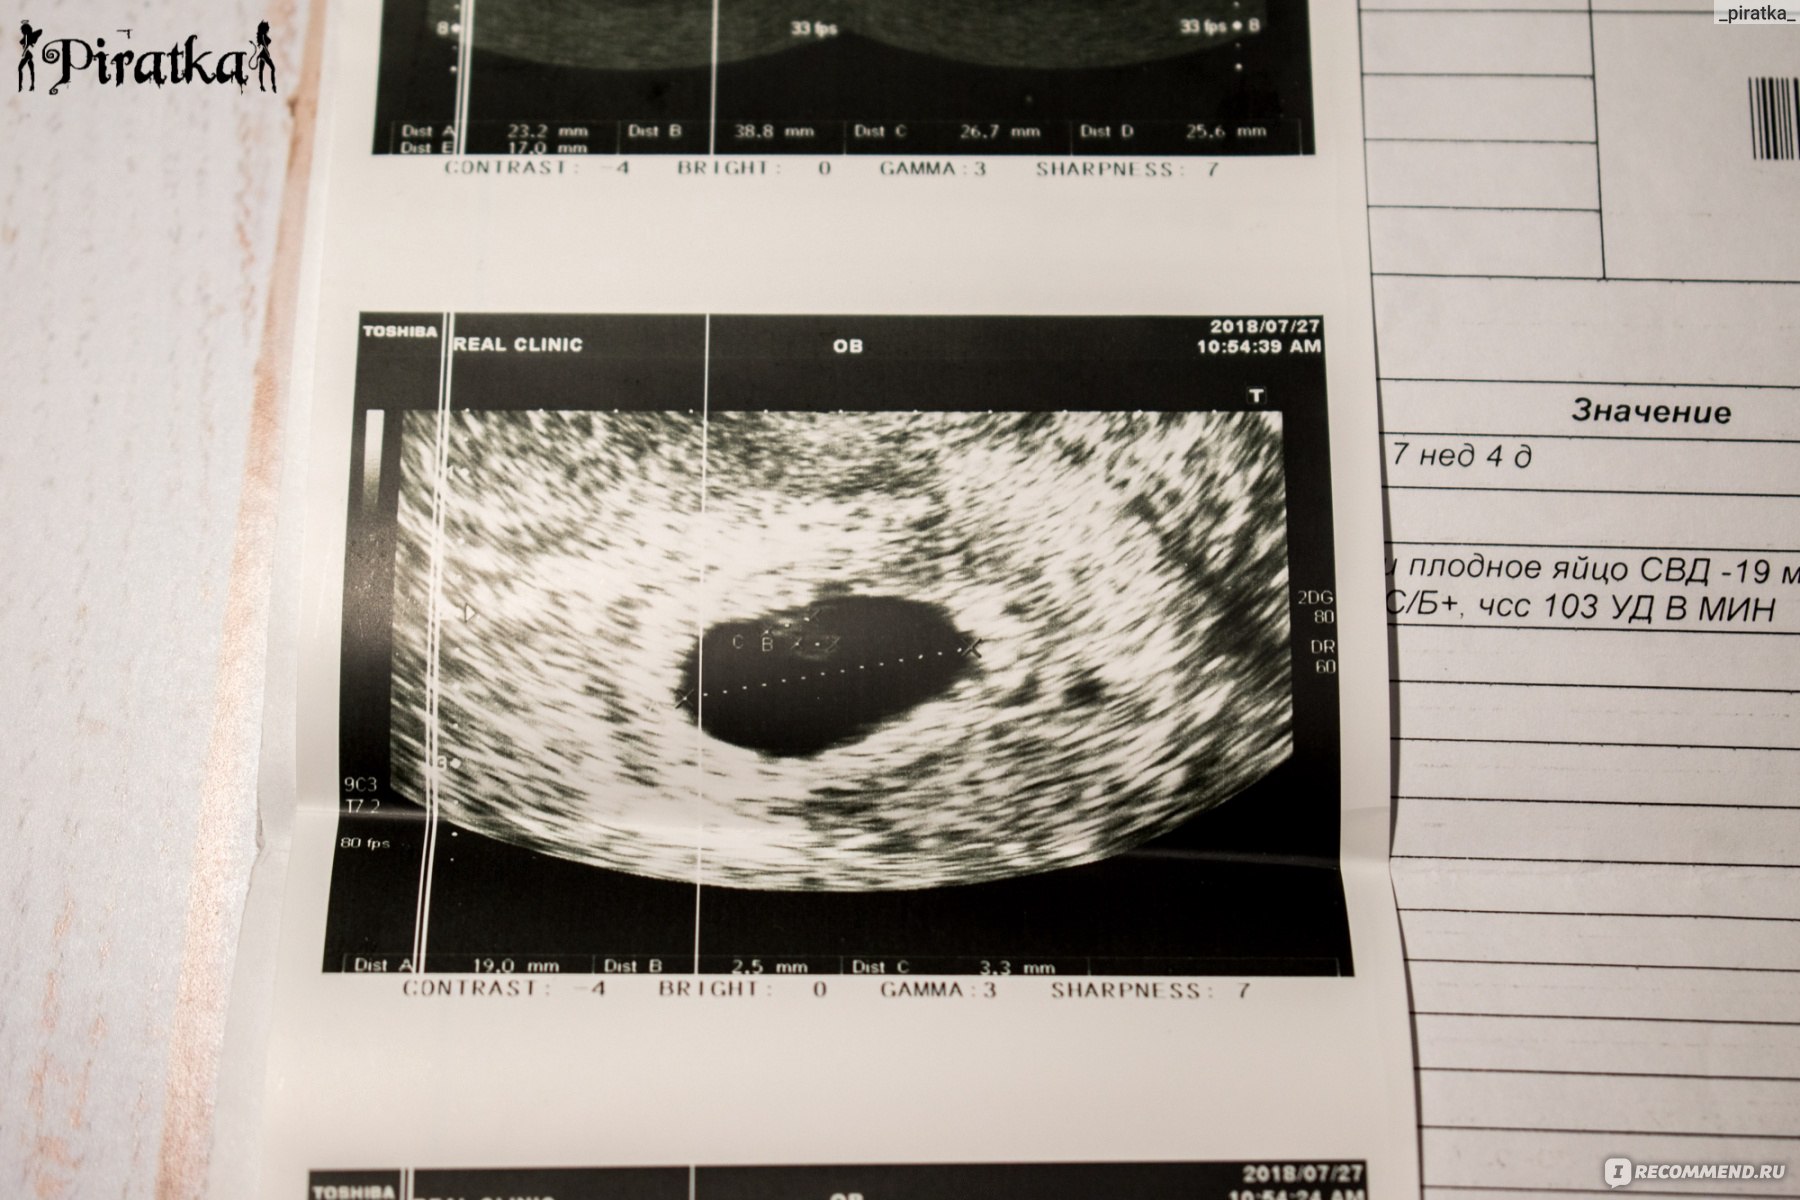 Беременность 4 недели видна на узи. УЗИ на 5 акушерской неделе беременности. УЗИ беременности на ранних сроках. Снимок УЗИ беременности на ранних сроках.